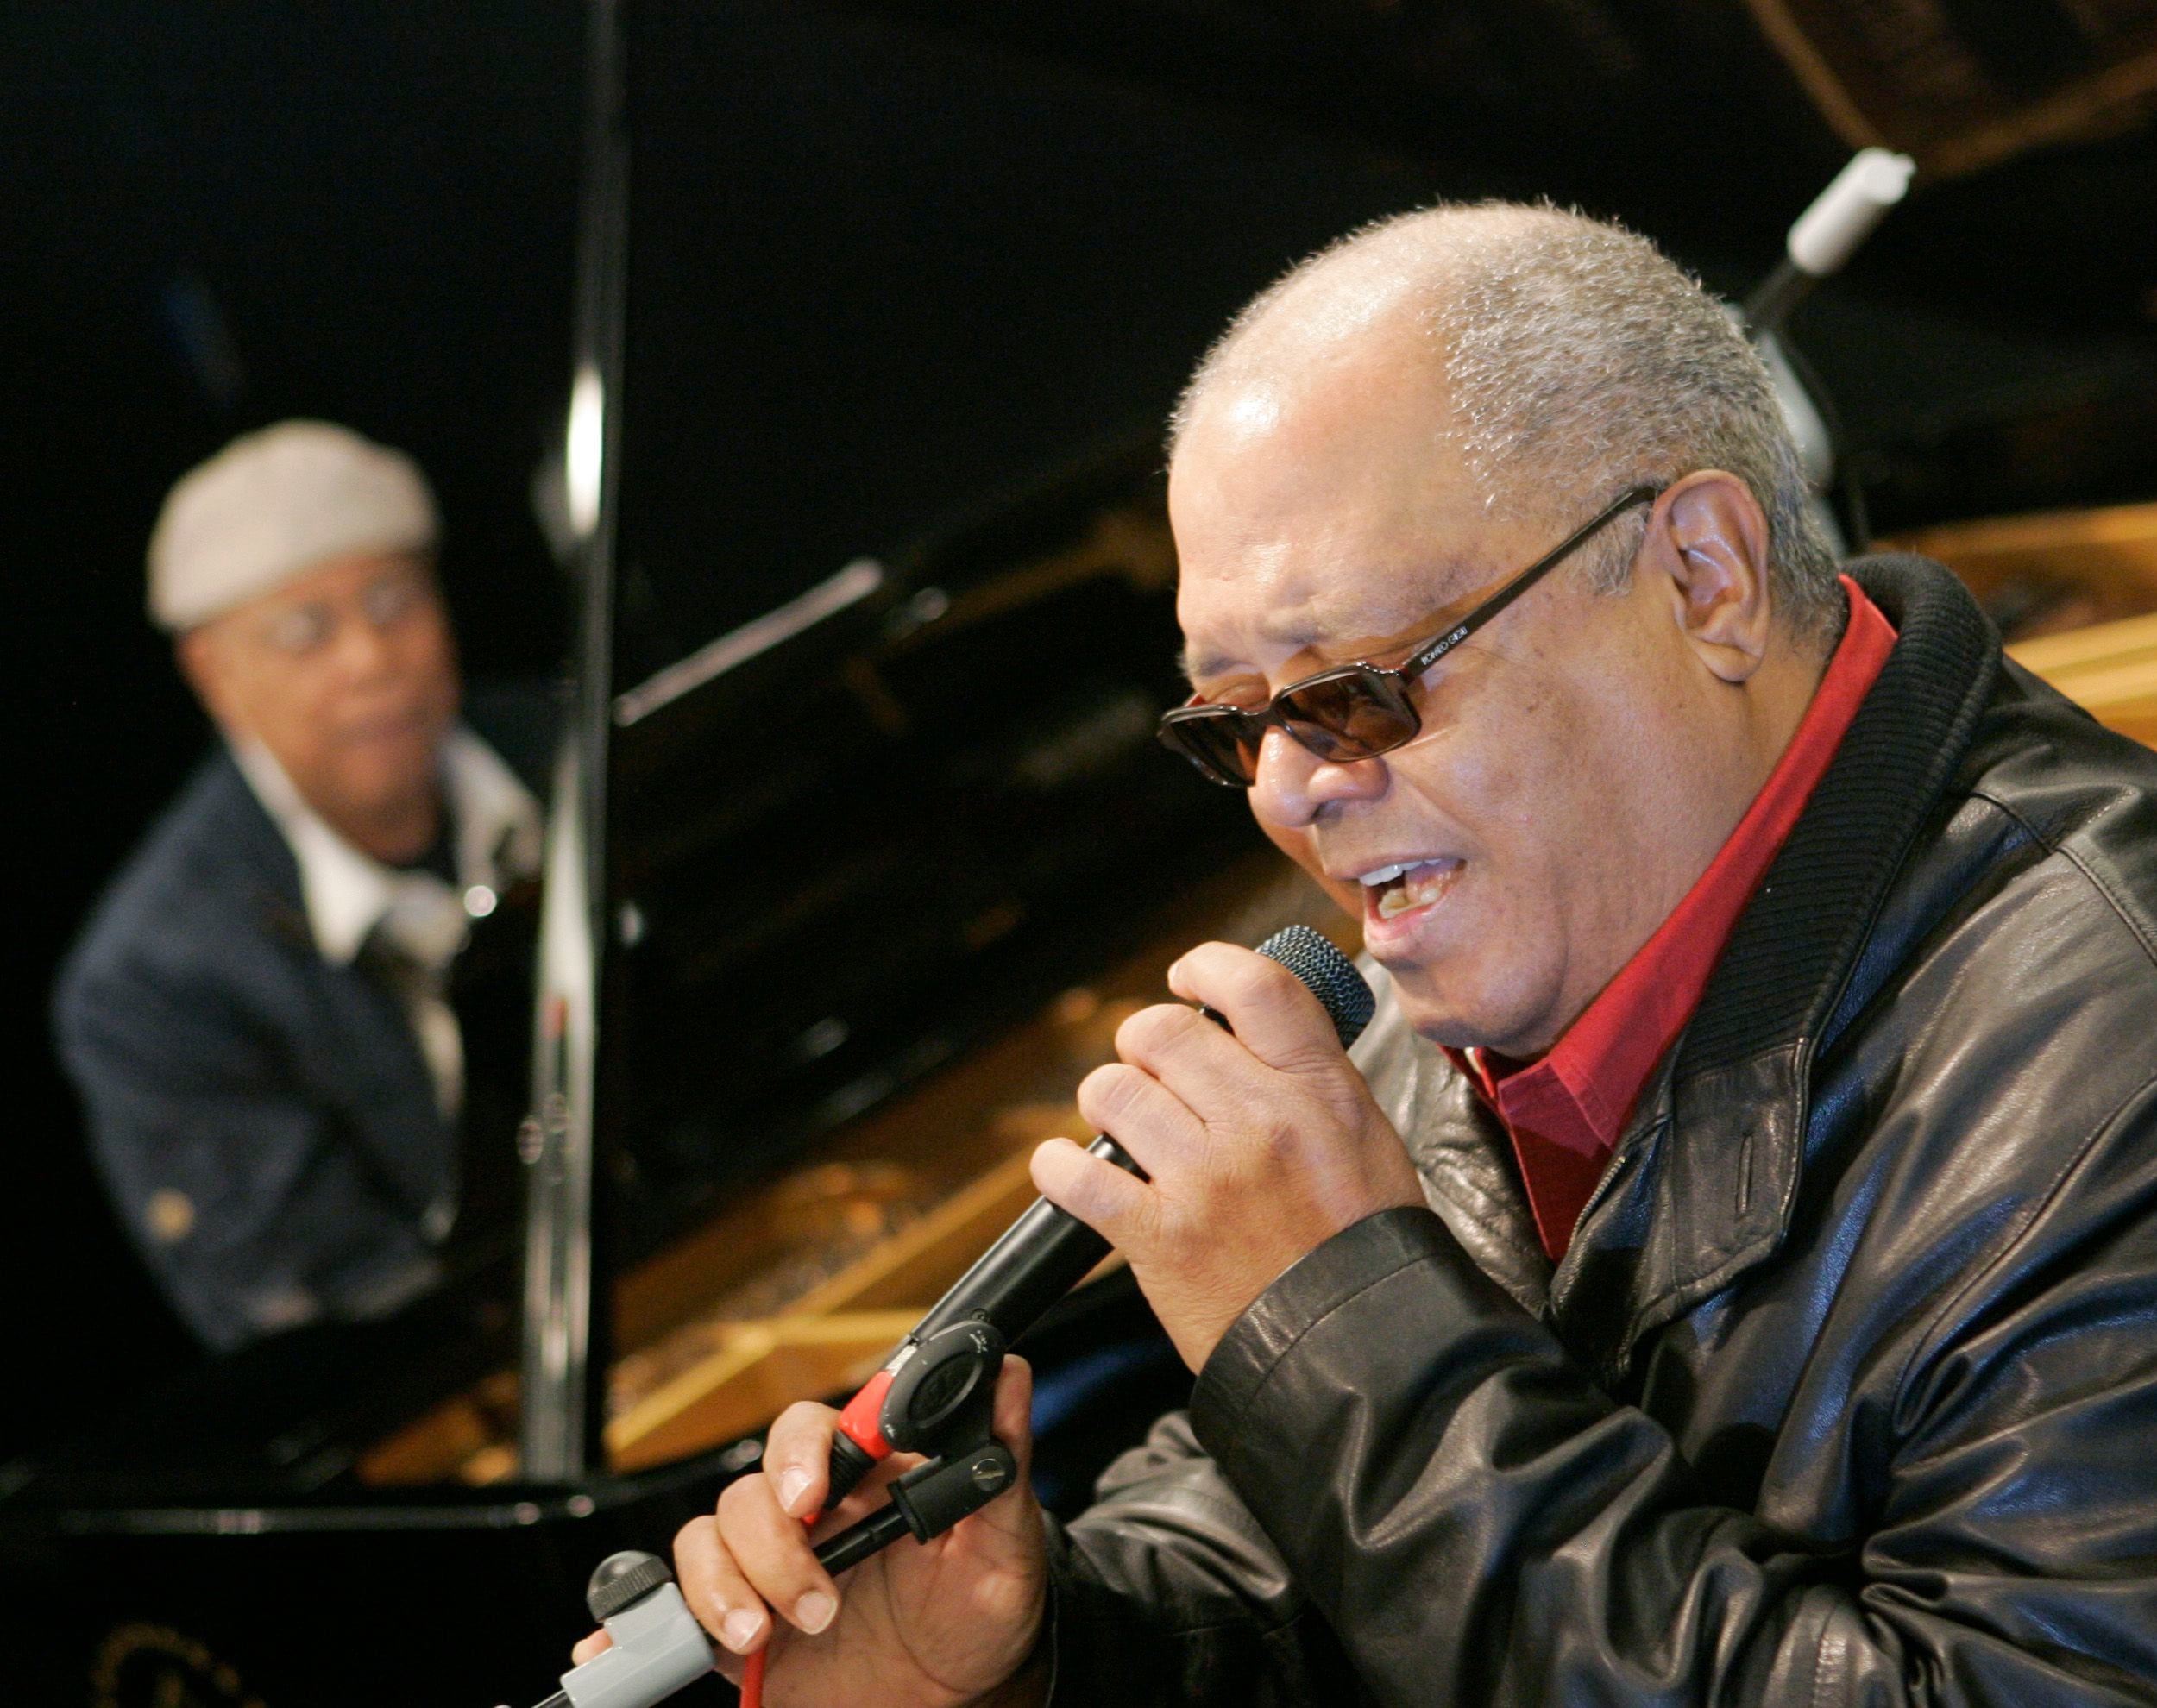 La música cubana tiene grandes referentes, entre ellos Pablo Milanés y Chucho Valdés, quienes trabajaron juntos en el disco 'Más allá de todo'.
